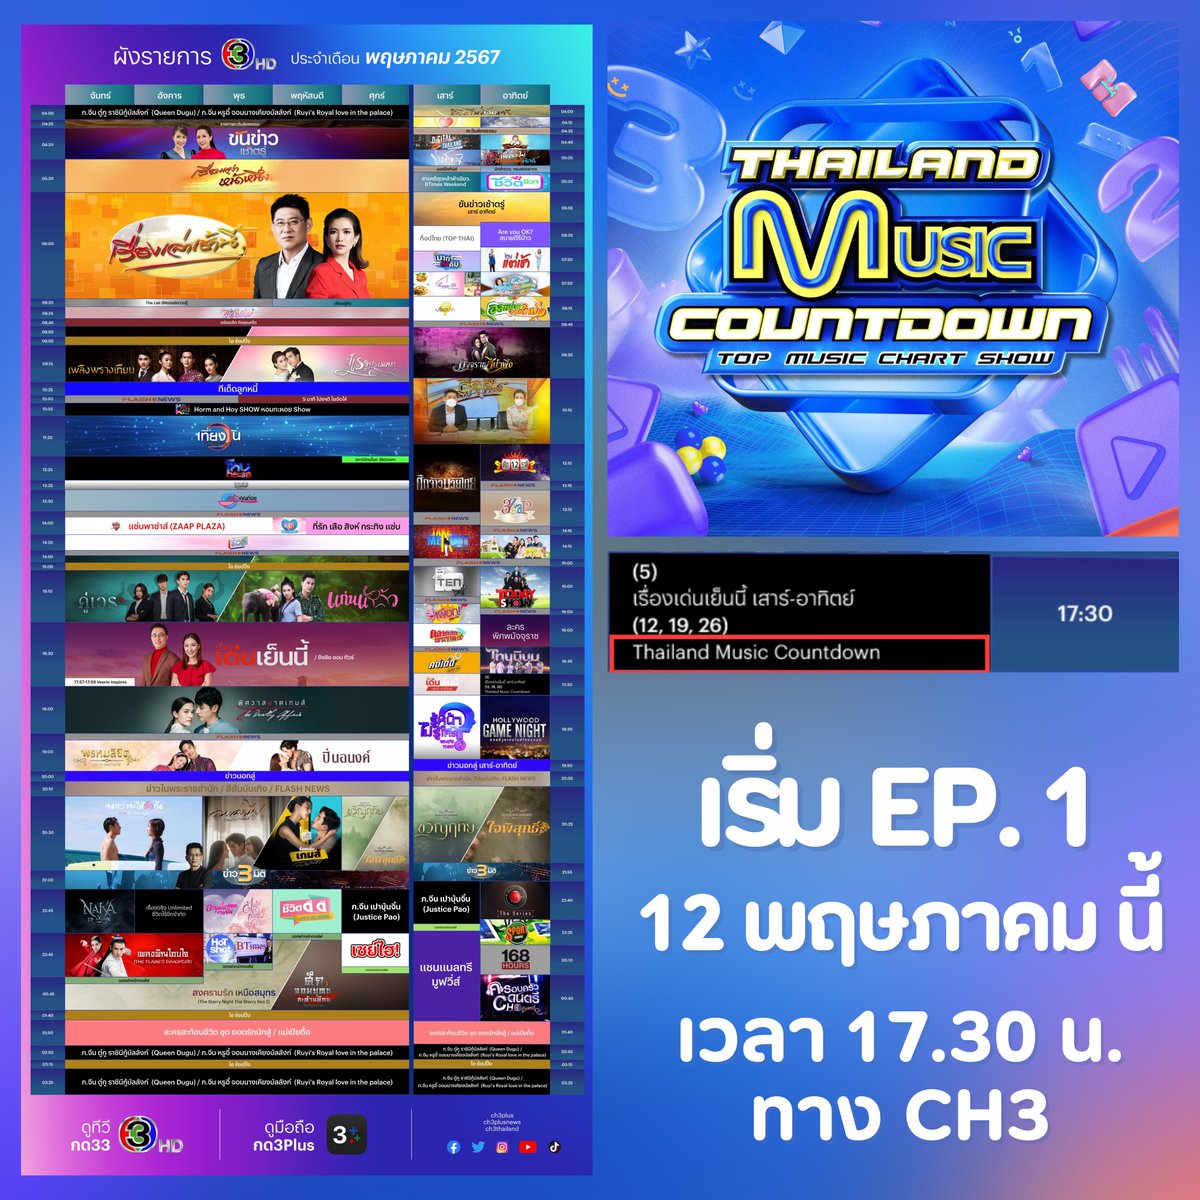 เผยให้เห็น!! ผังรายการ CH3 ประจำเดือนพฤษภาคม 2567 ซึ่งในตารางมีผังรายการ Thailand Music Countdown (รายการมิวสิคสเตจโชว์ที่กำลังมาแรงในขณะนี้) ได้คาดการว่าน่าจะออกอากาศทางช่อง 3 ตั้งแต่เวลา 17.30 เป็นต้นไป

เริ่ม EP. แรก 12 พฤษภาคมนี้

#TMCCountdown #ThailandMusicCountdown
#TPOP